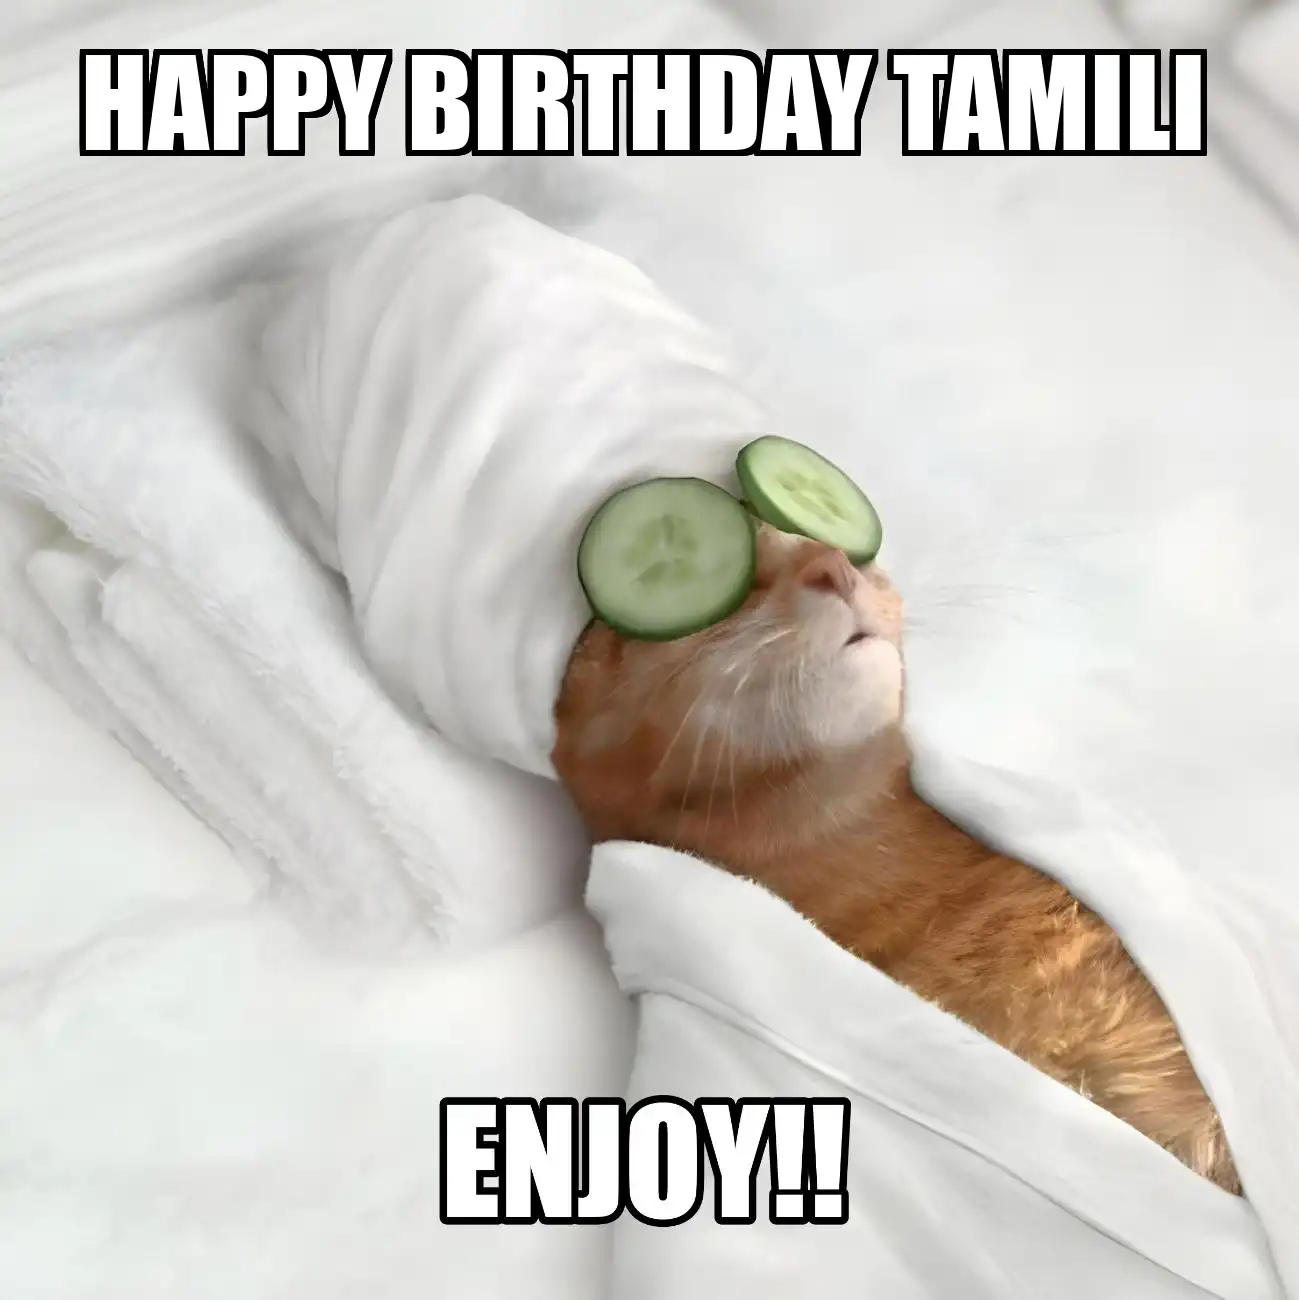 Happy Birthday Tamili Enjoy Cat Meme